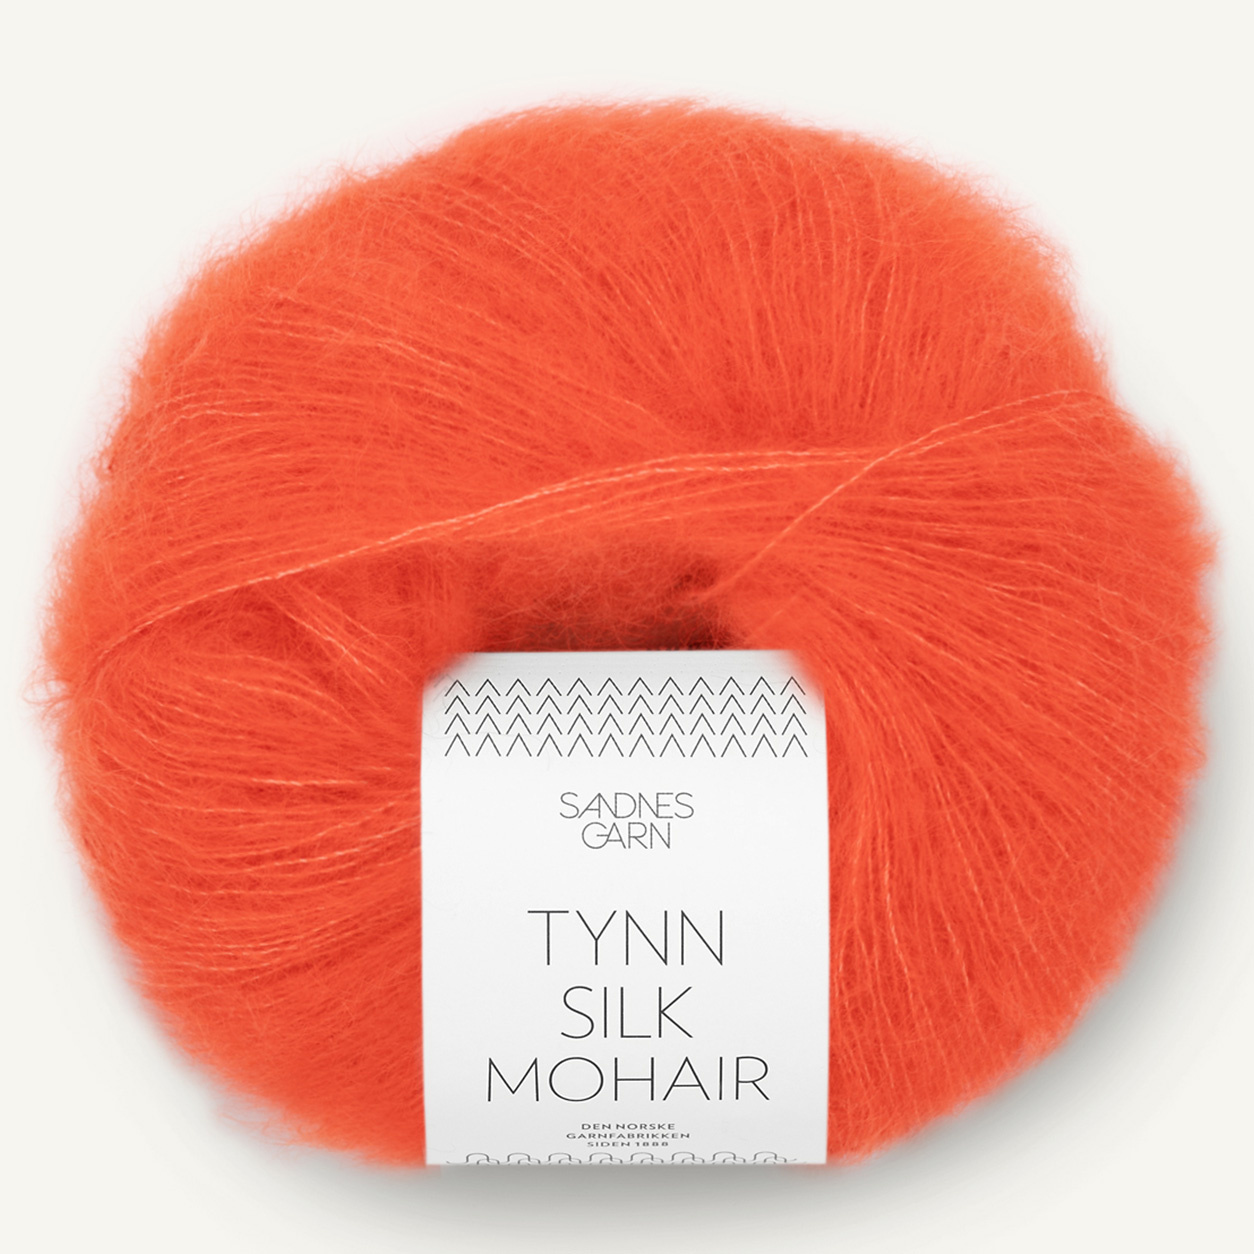 Sandnes Tynn Silk Mohair, 3818, Orangerot